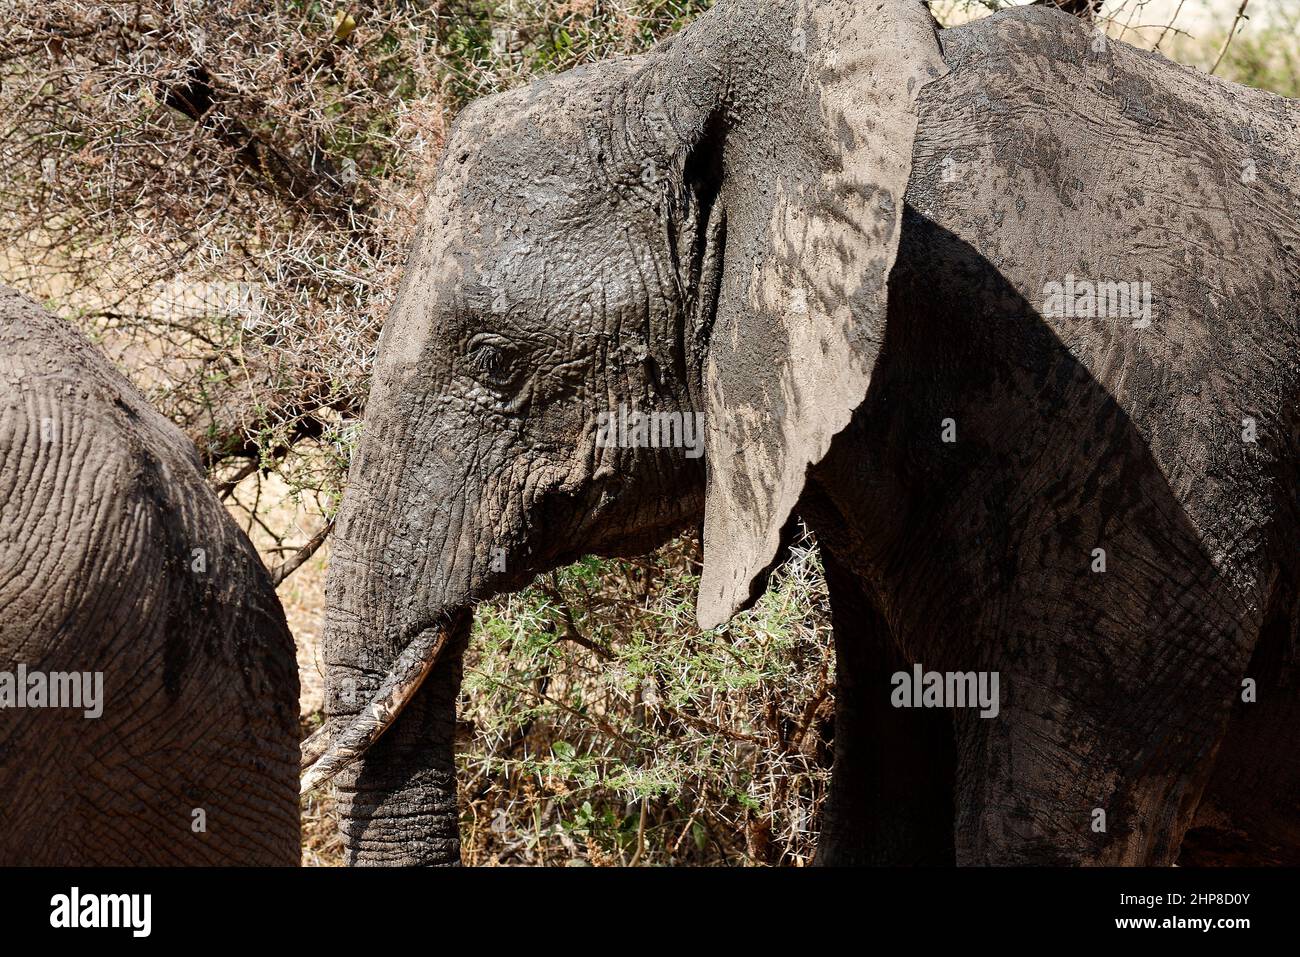 Elefante africano, Loxodanta africana, herbívoros, elefante africano; primeros planos; recubiertos de barro; textura; cabeza; oído grande; Foto de stock